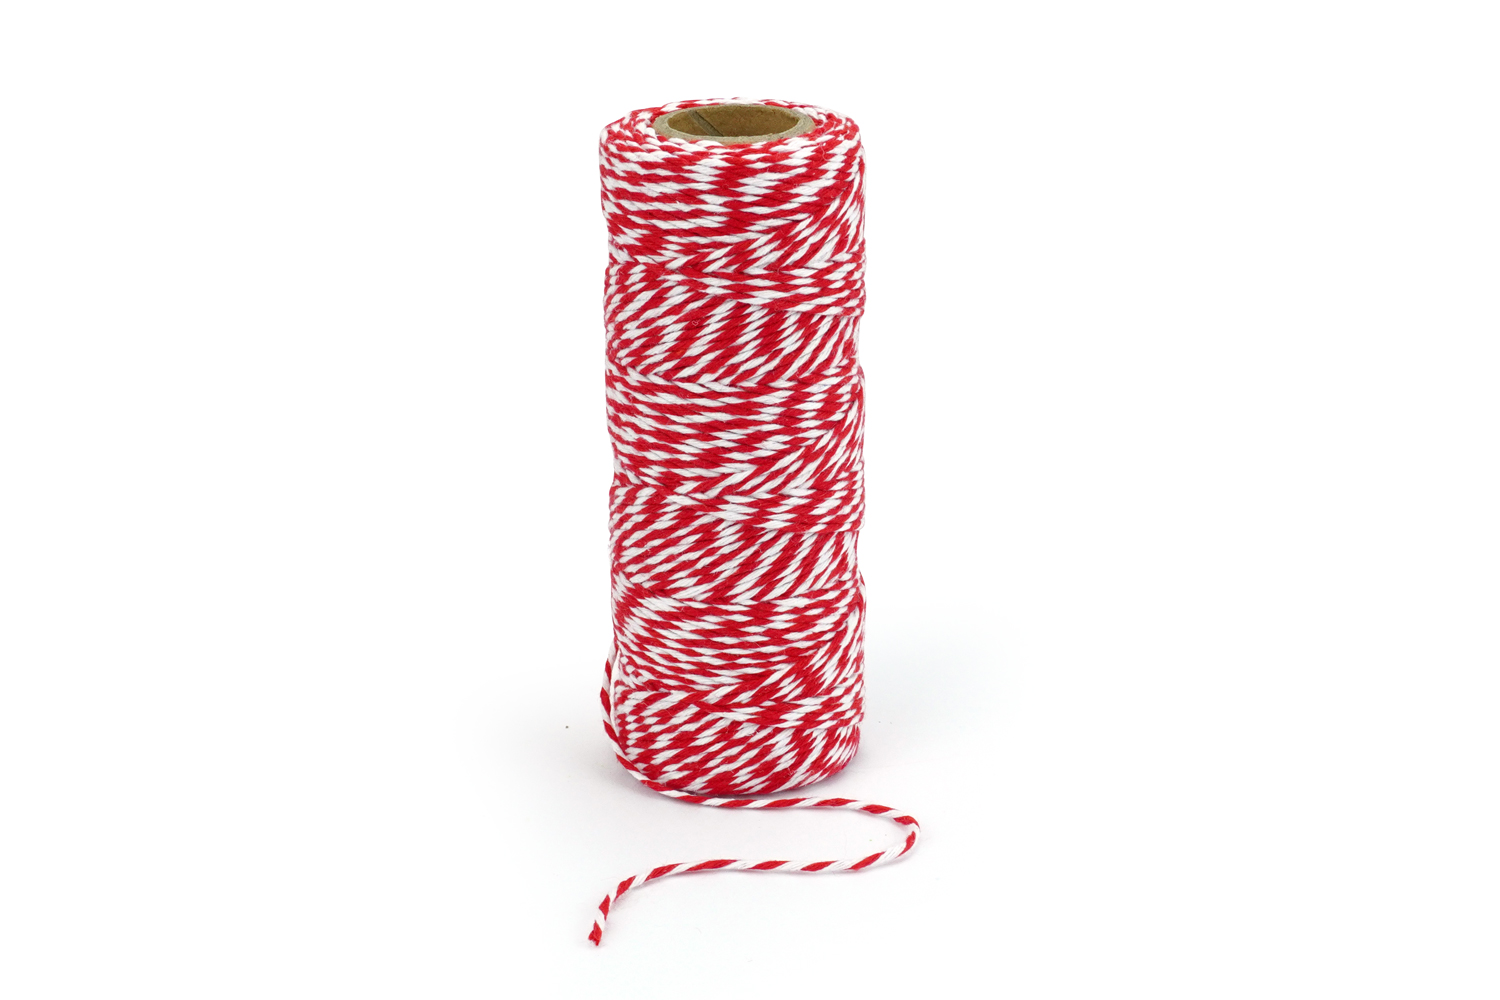 Son câble est en textile mélange de rouge et blanc et mesure 2 mètres.